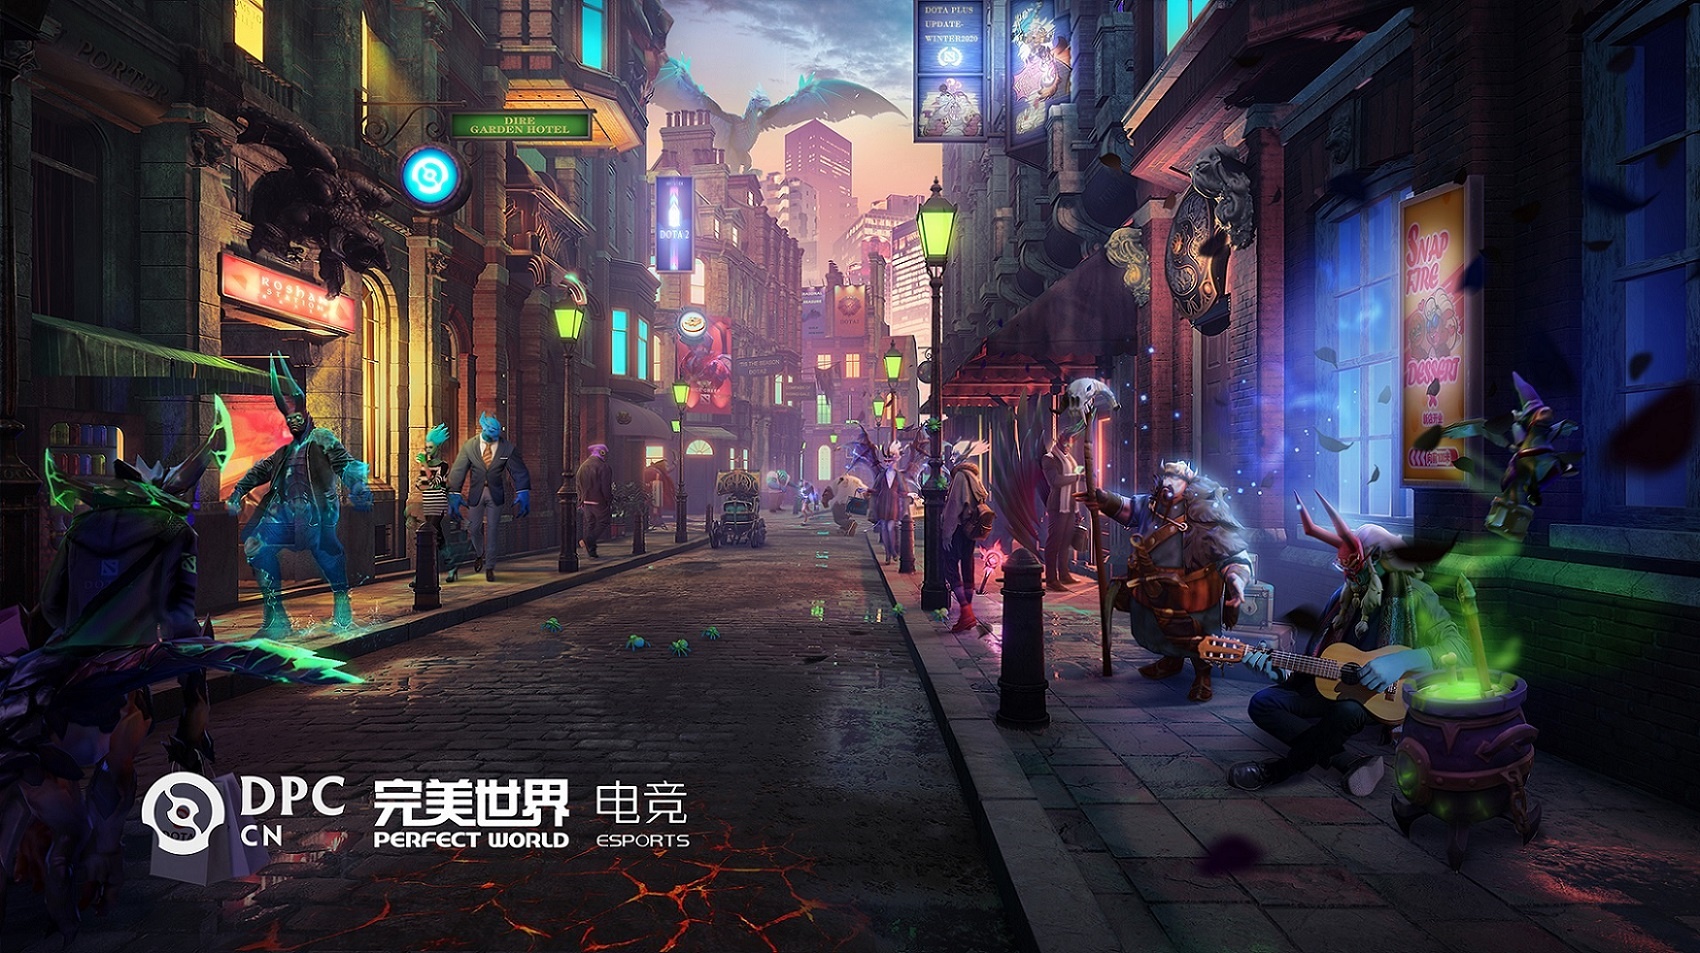 Rekap DPC China 2021 Pekan Kedua, Vici Gaming Masih Kuat di Puncak